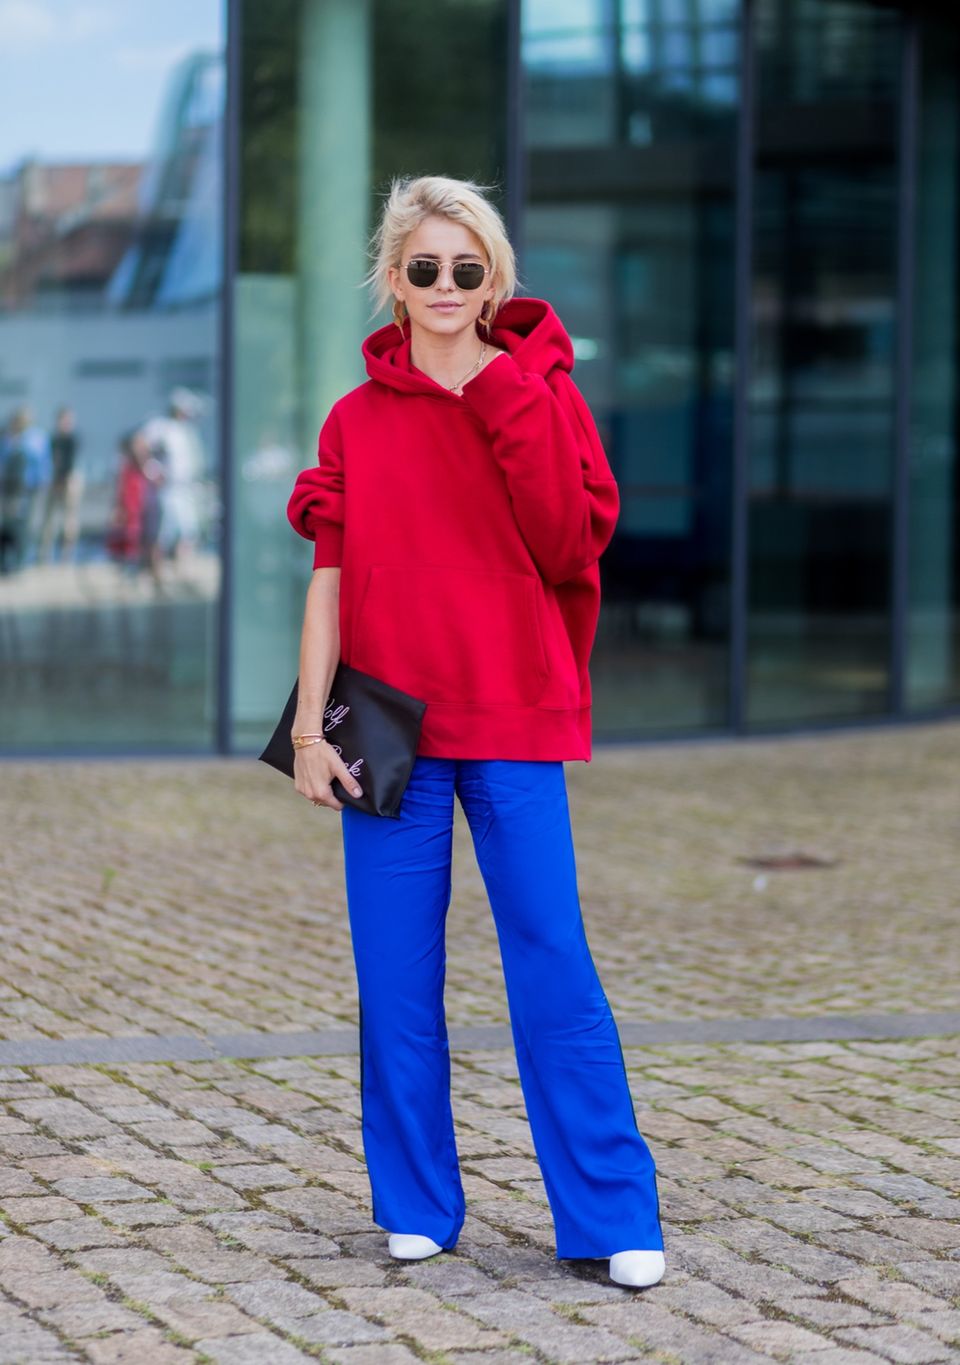 Bloggerin Caro Daur trägt einen roten Hoodie zu knallblauer Hose